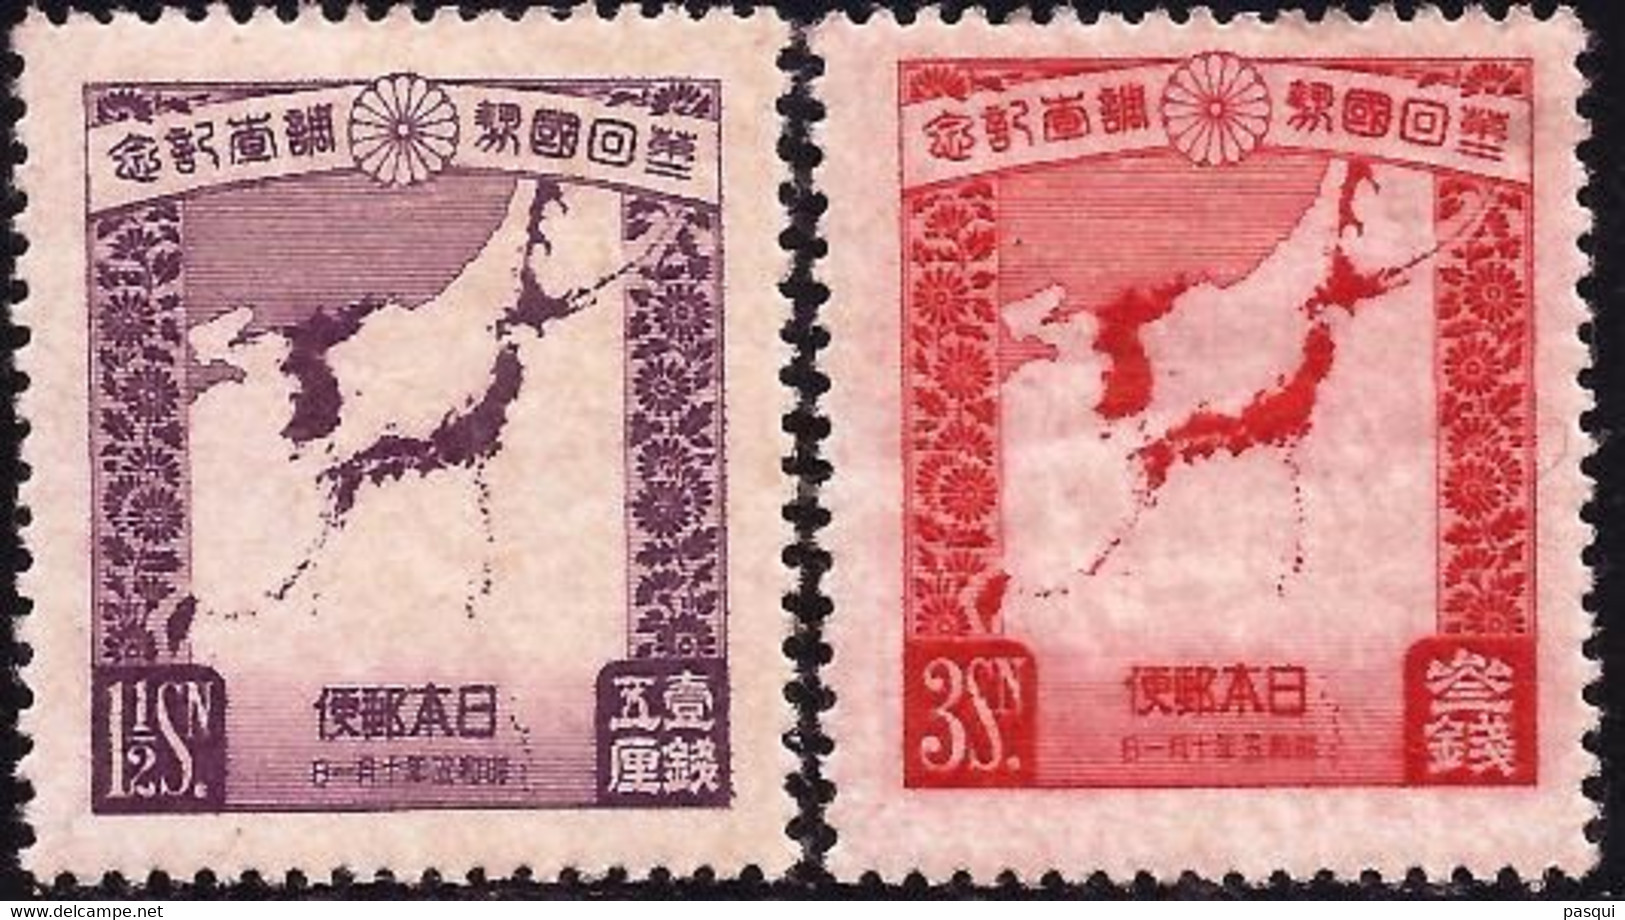 JAPON - Fx. 2909a - Yv. 213/4 - 2º Censo - Mapa Con Corea Y Manchucuo - 1930 - * - Neufs